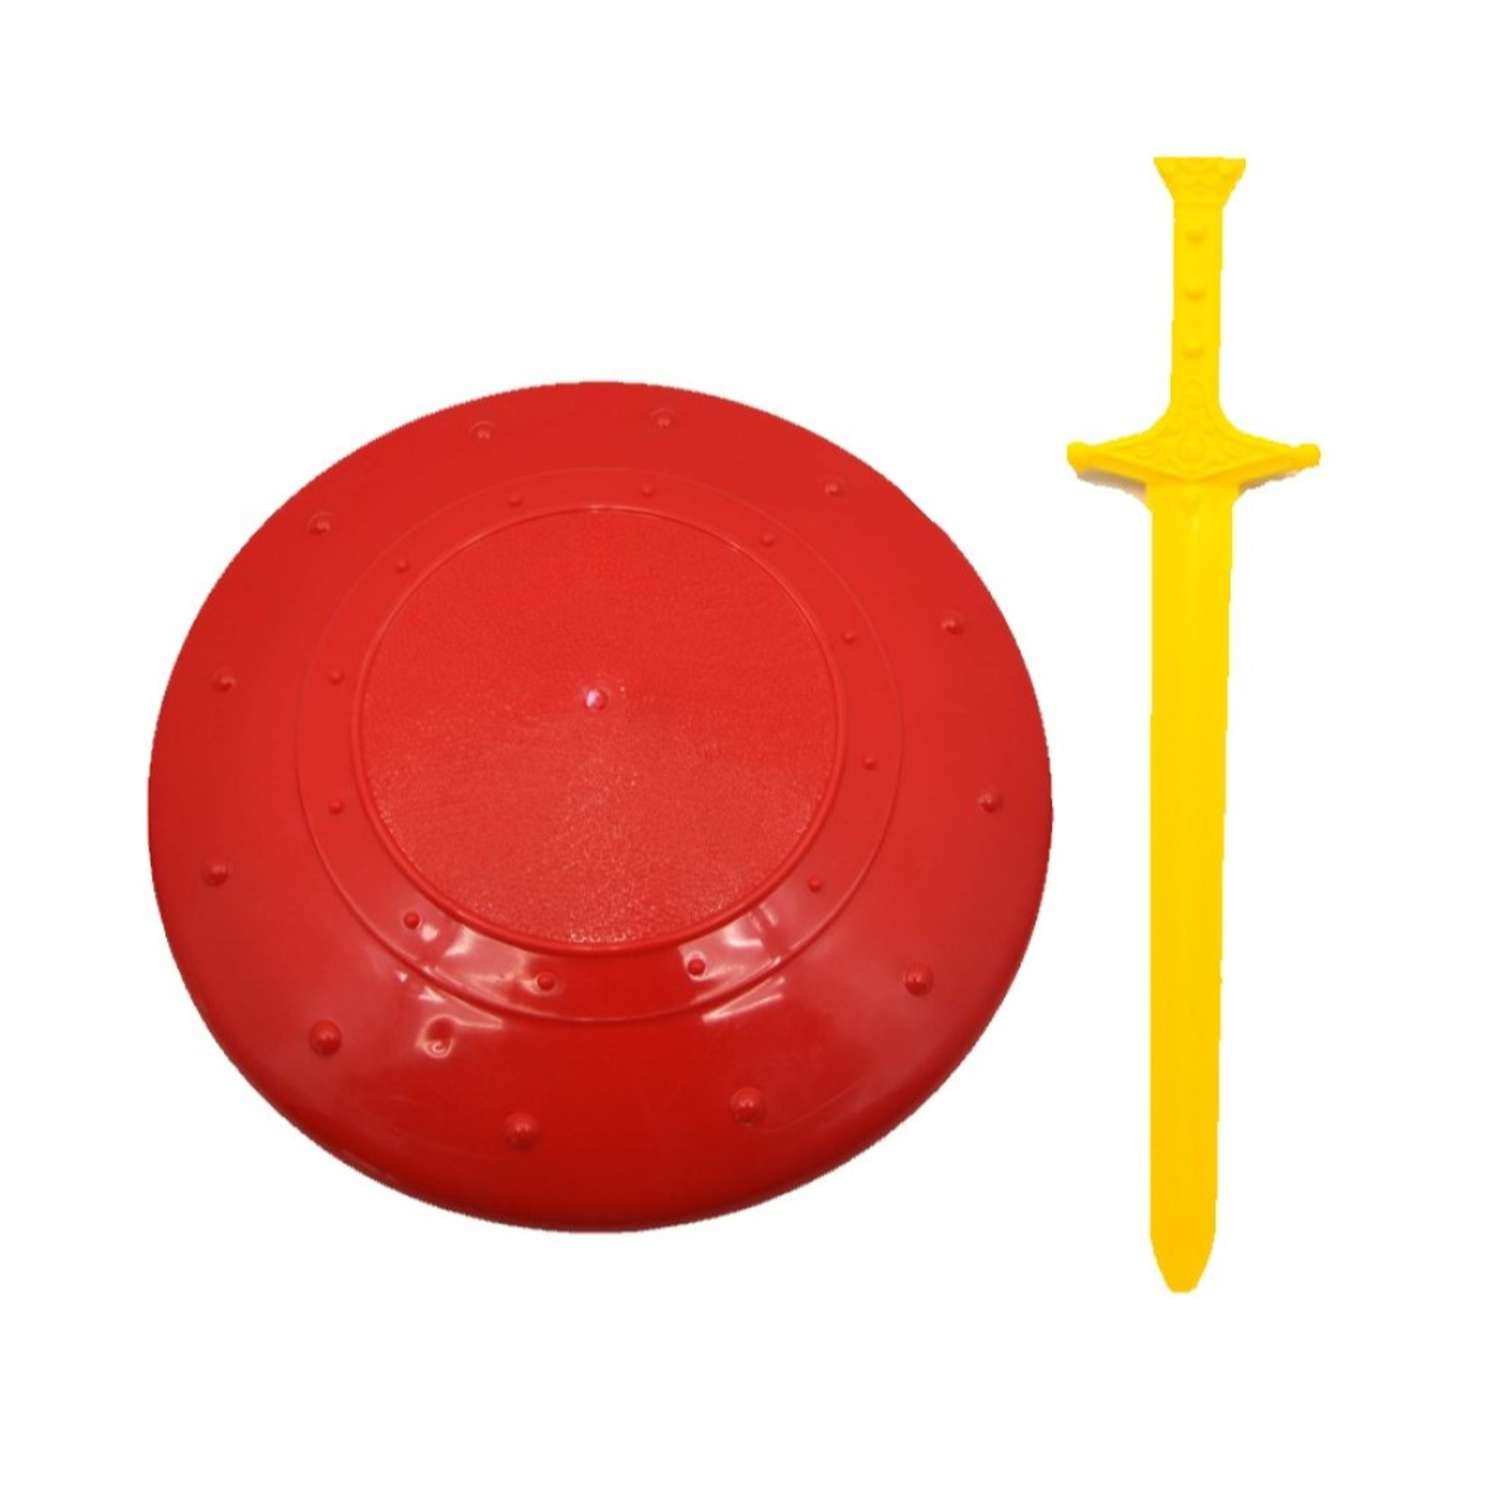 Игровой набор Maximus Щит и меч красный/желтый - фото 1